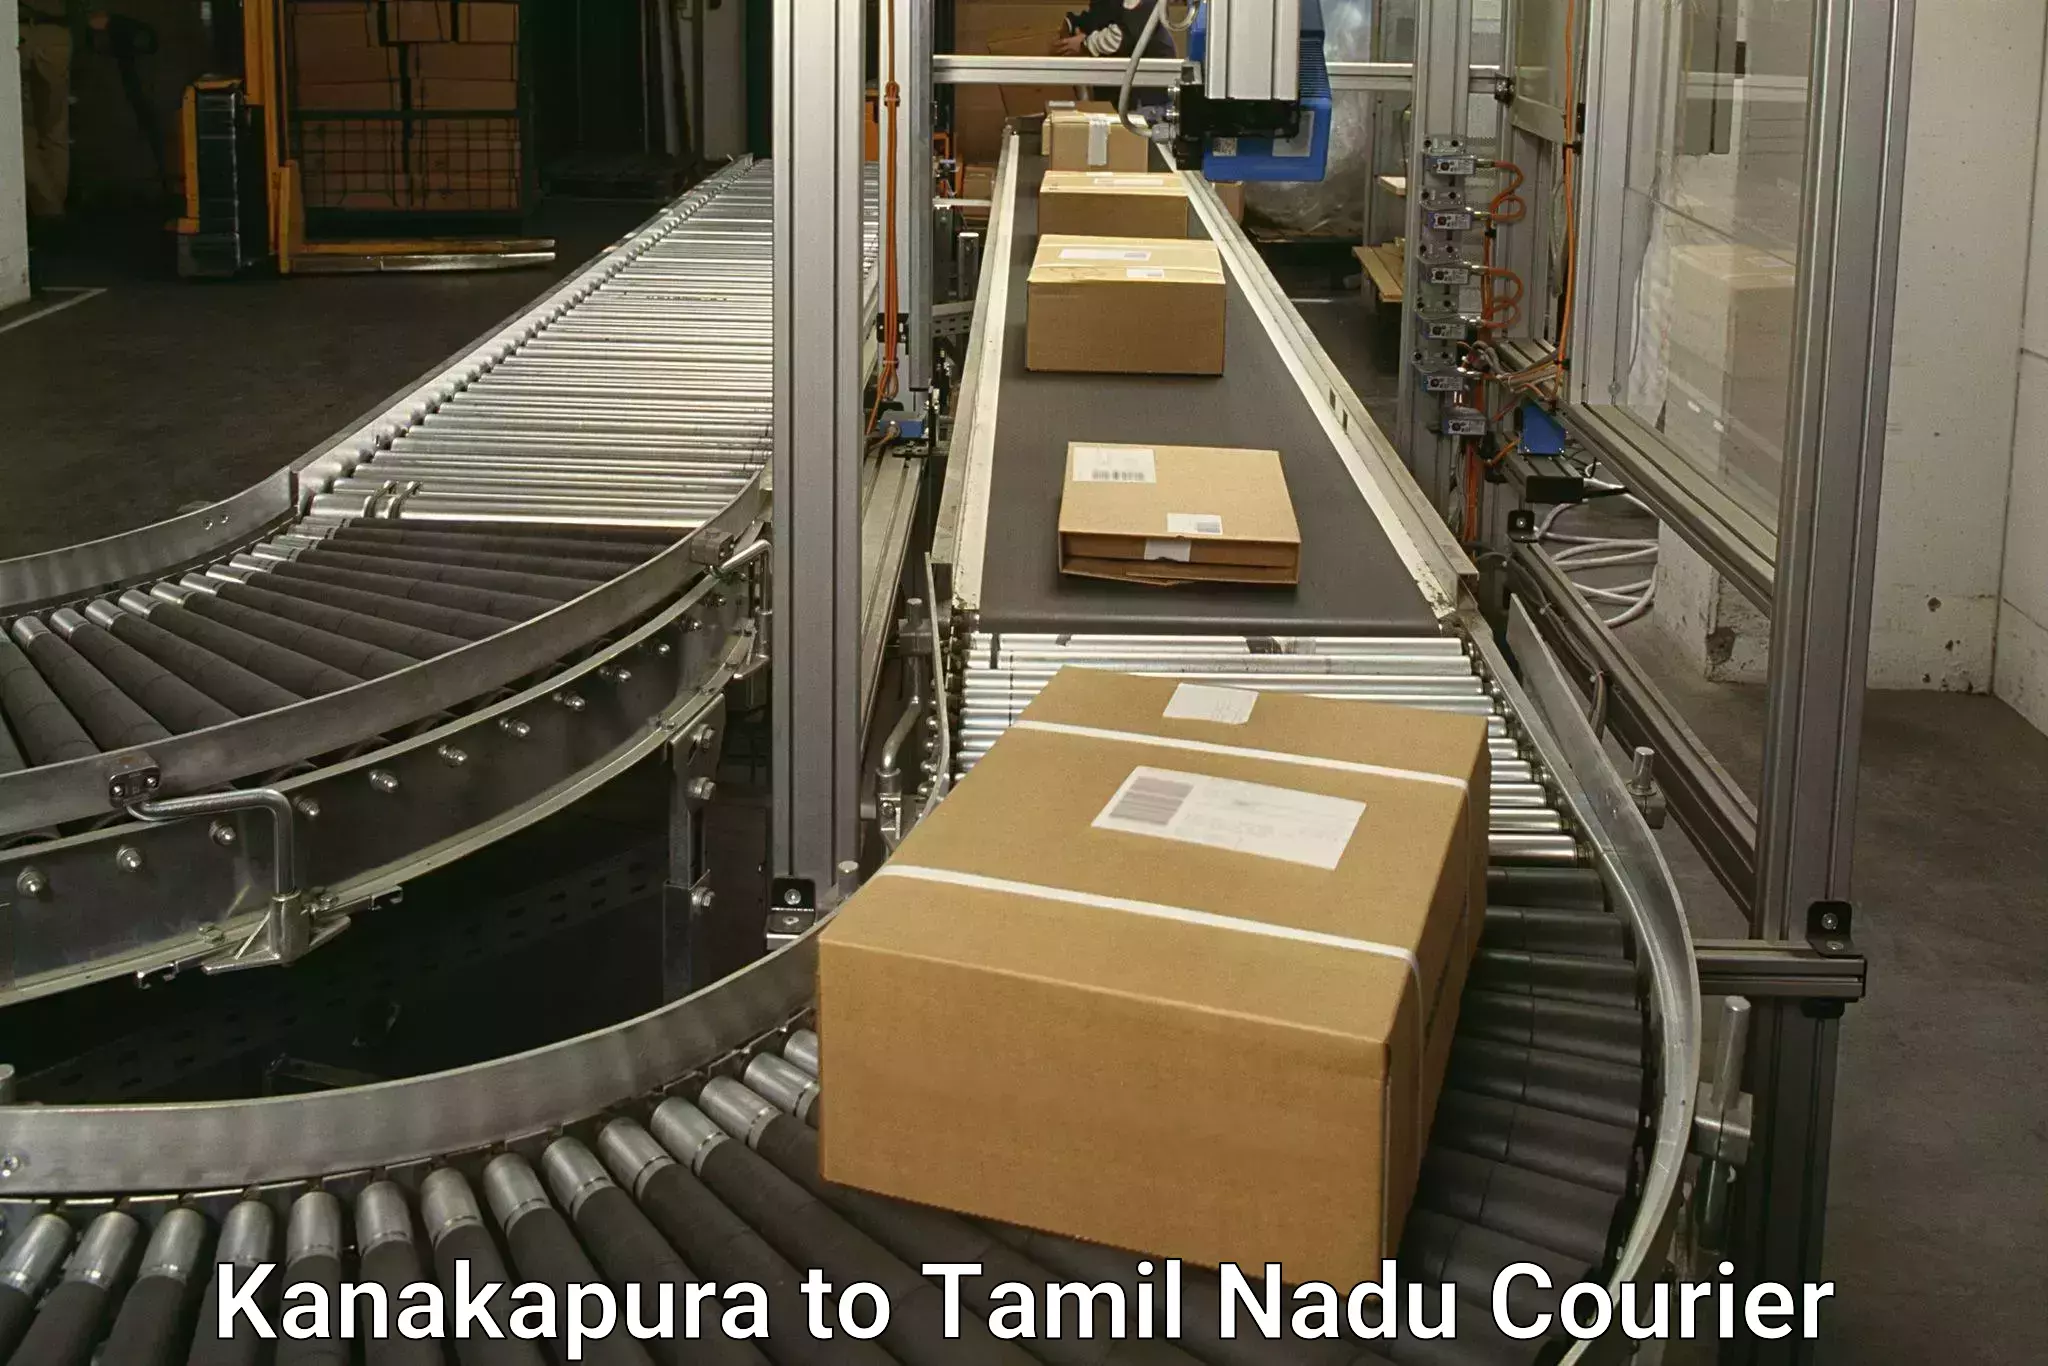 Multi-service courier options Kanakapura to Sankarankoil